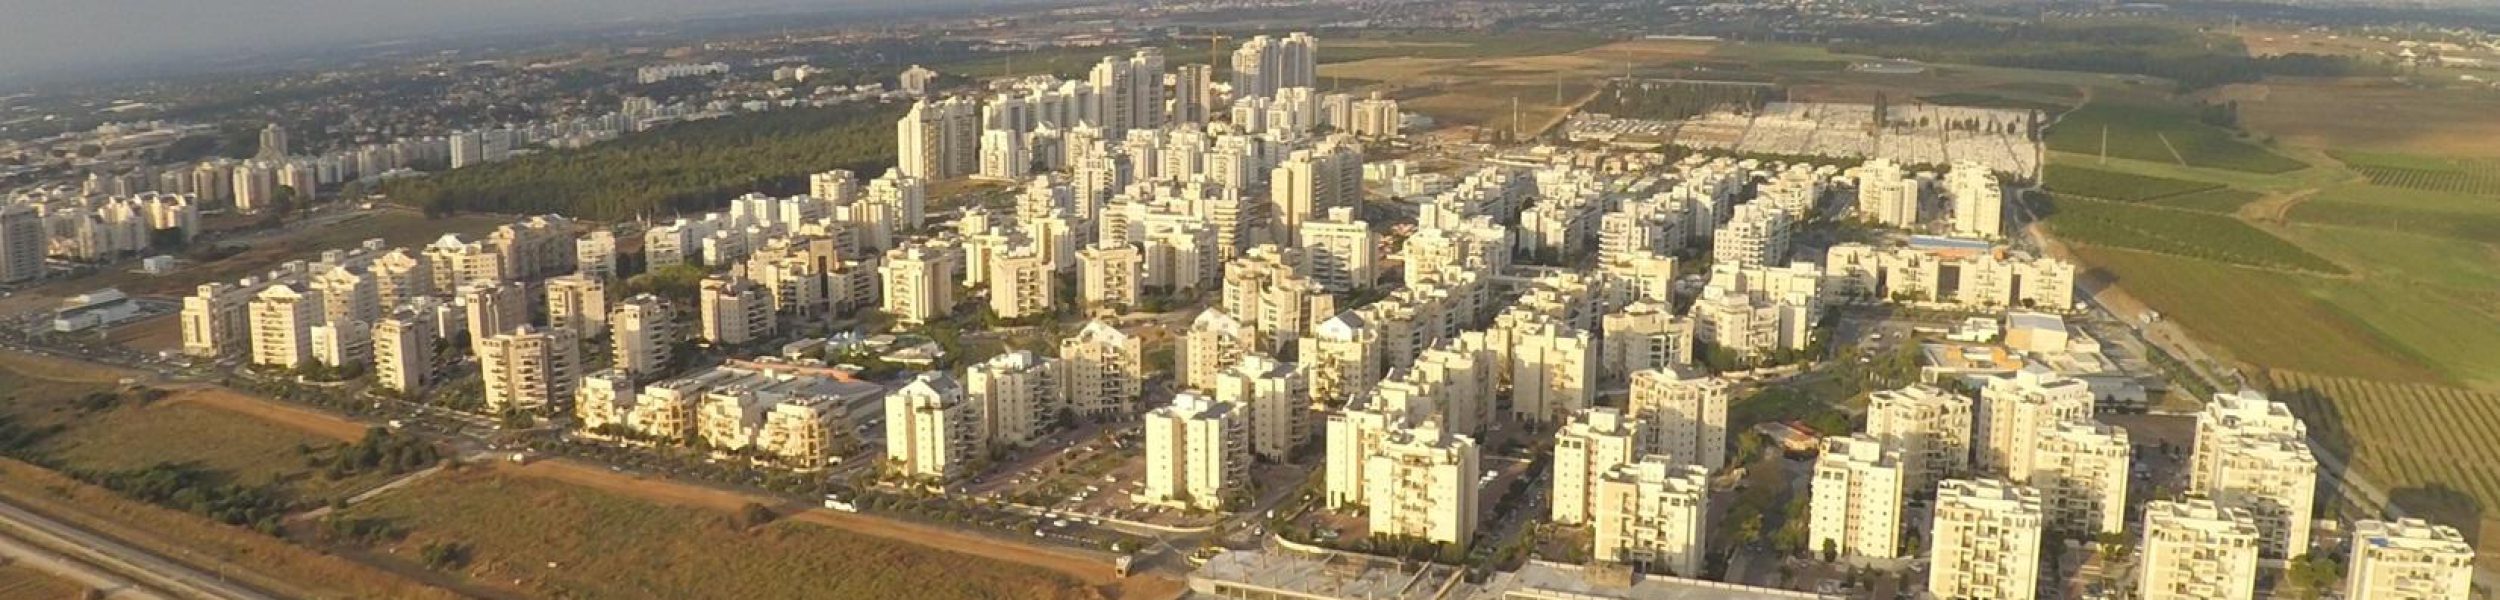 שכונת קריית השרון (צילום: Eyalasaf, ויקיפדיה)